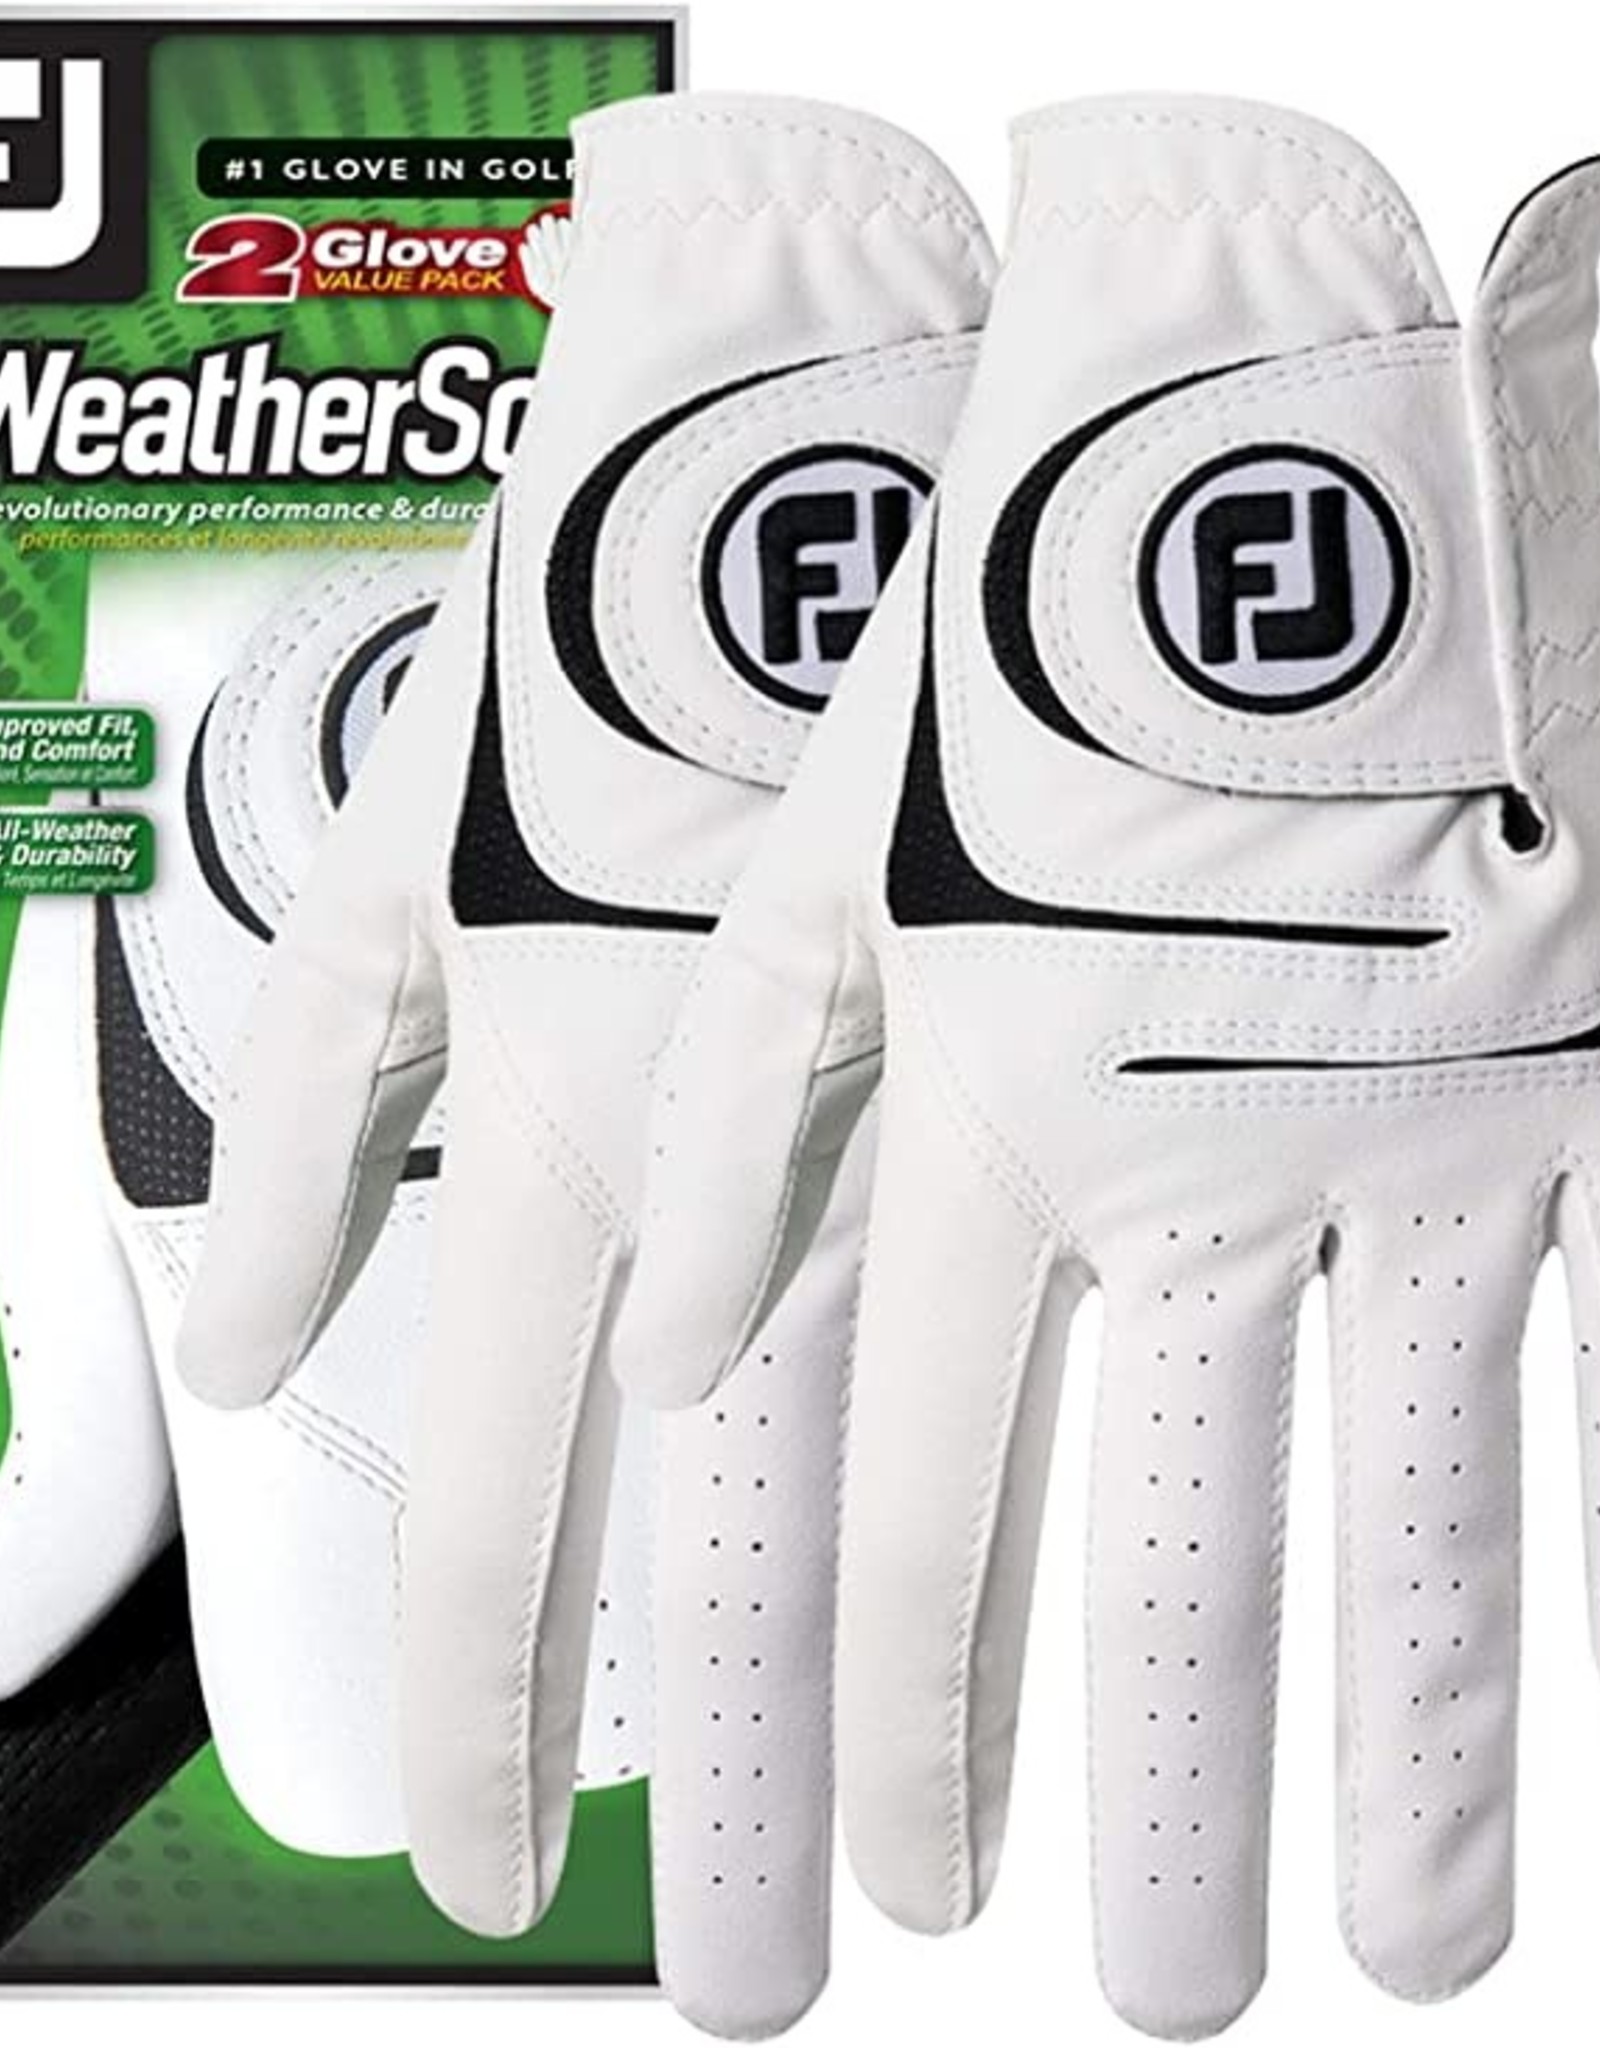 FootJoy FootJoy Women's WeatherSof Glove